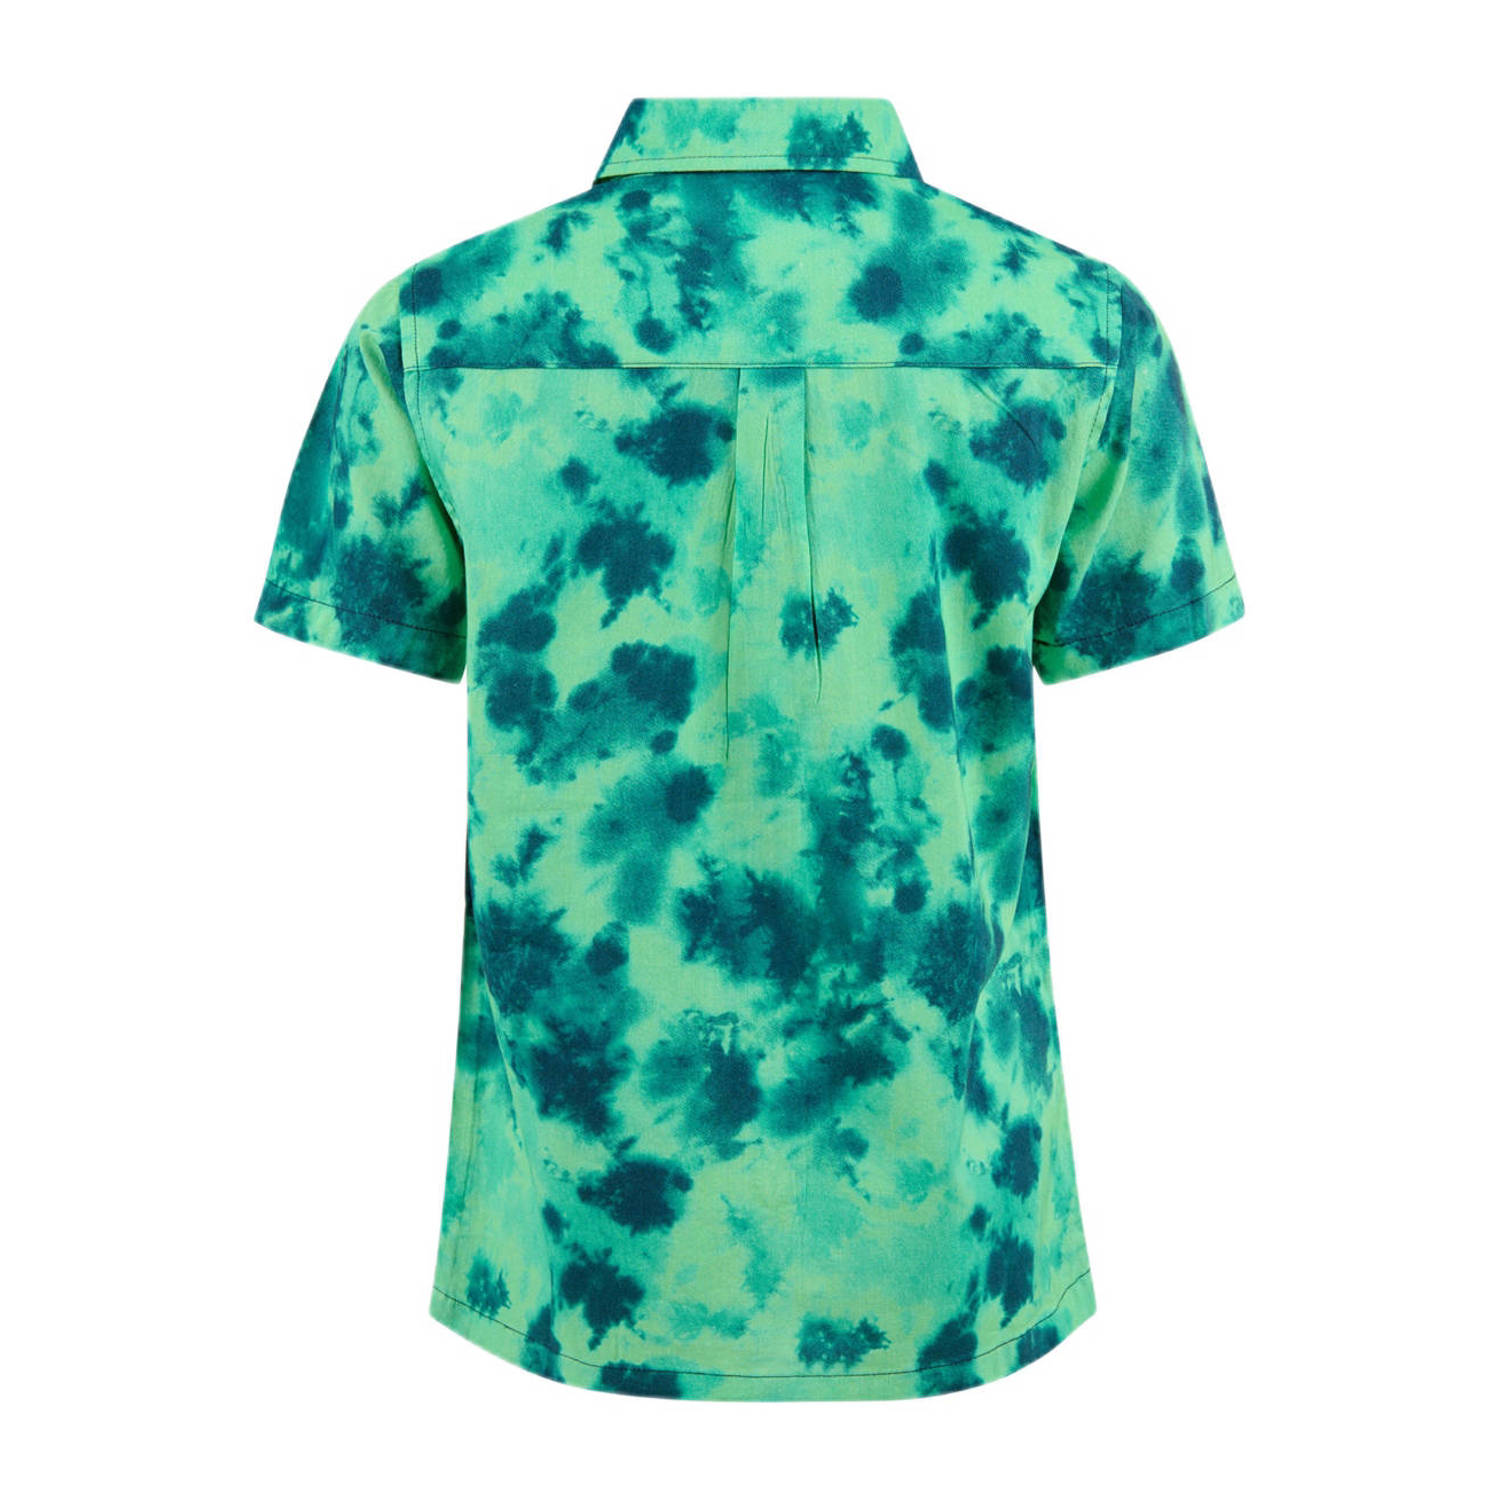 Shoeby overhemd met all over print groen